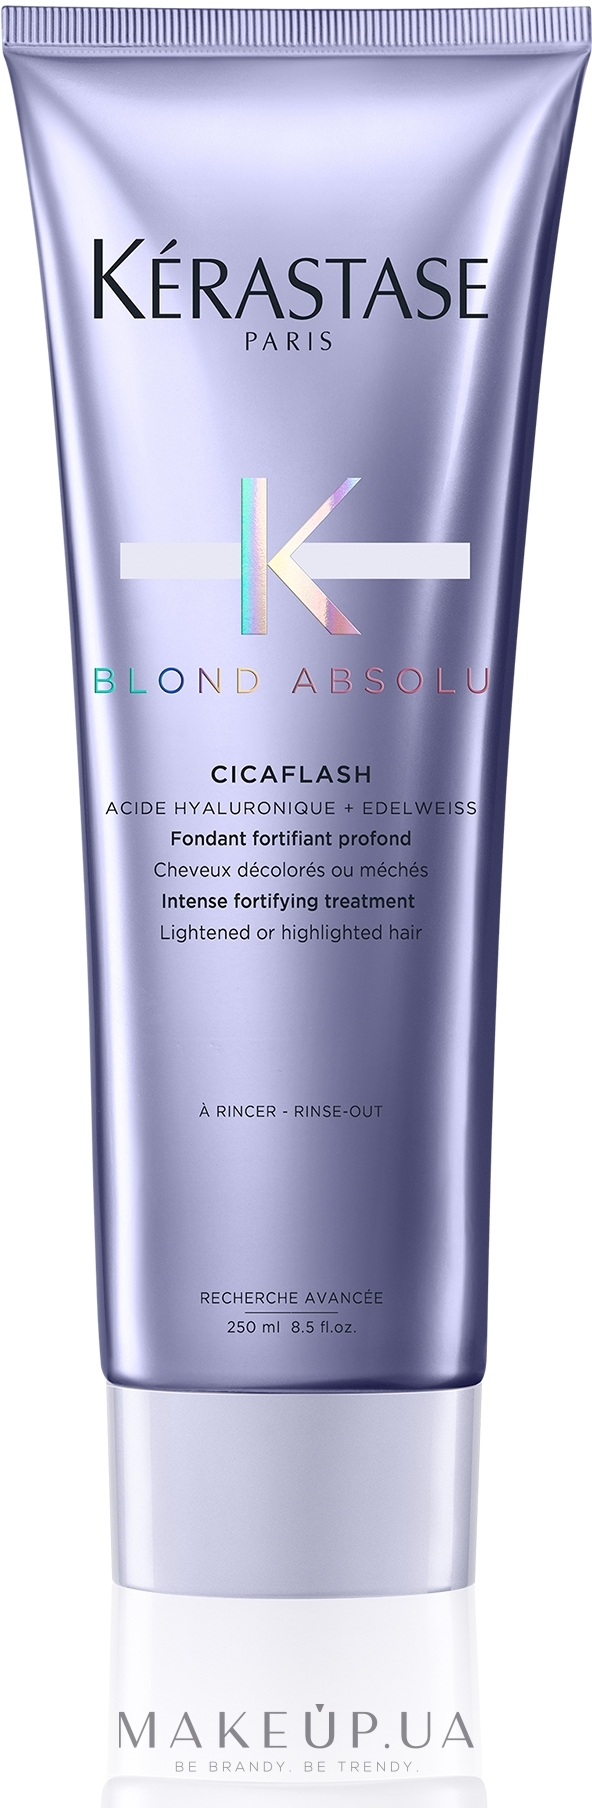 Фондан для зволоження і відновлення волосся - Kerastase Blond Absolu Cicaflash Conditioner — фото 250ml